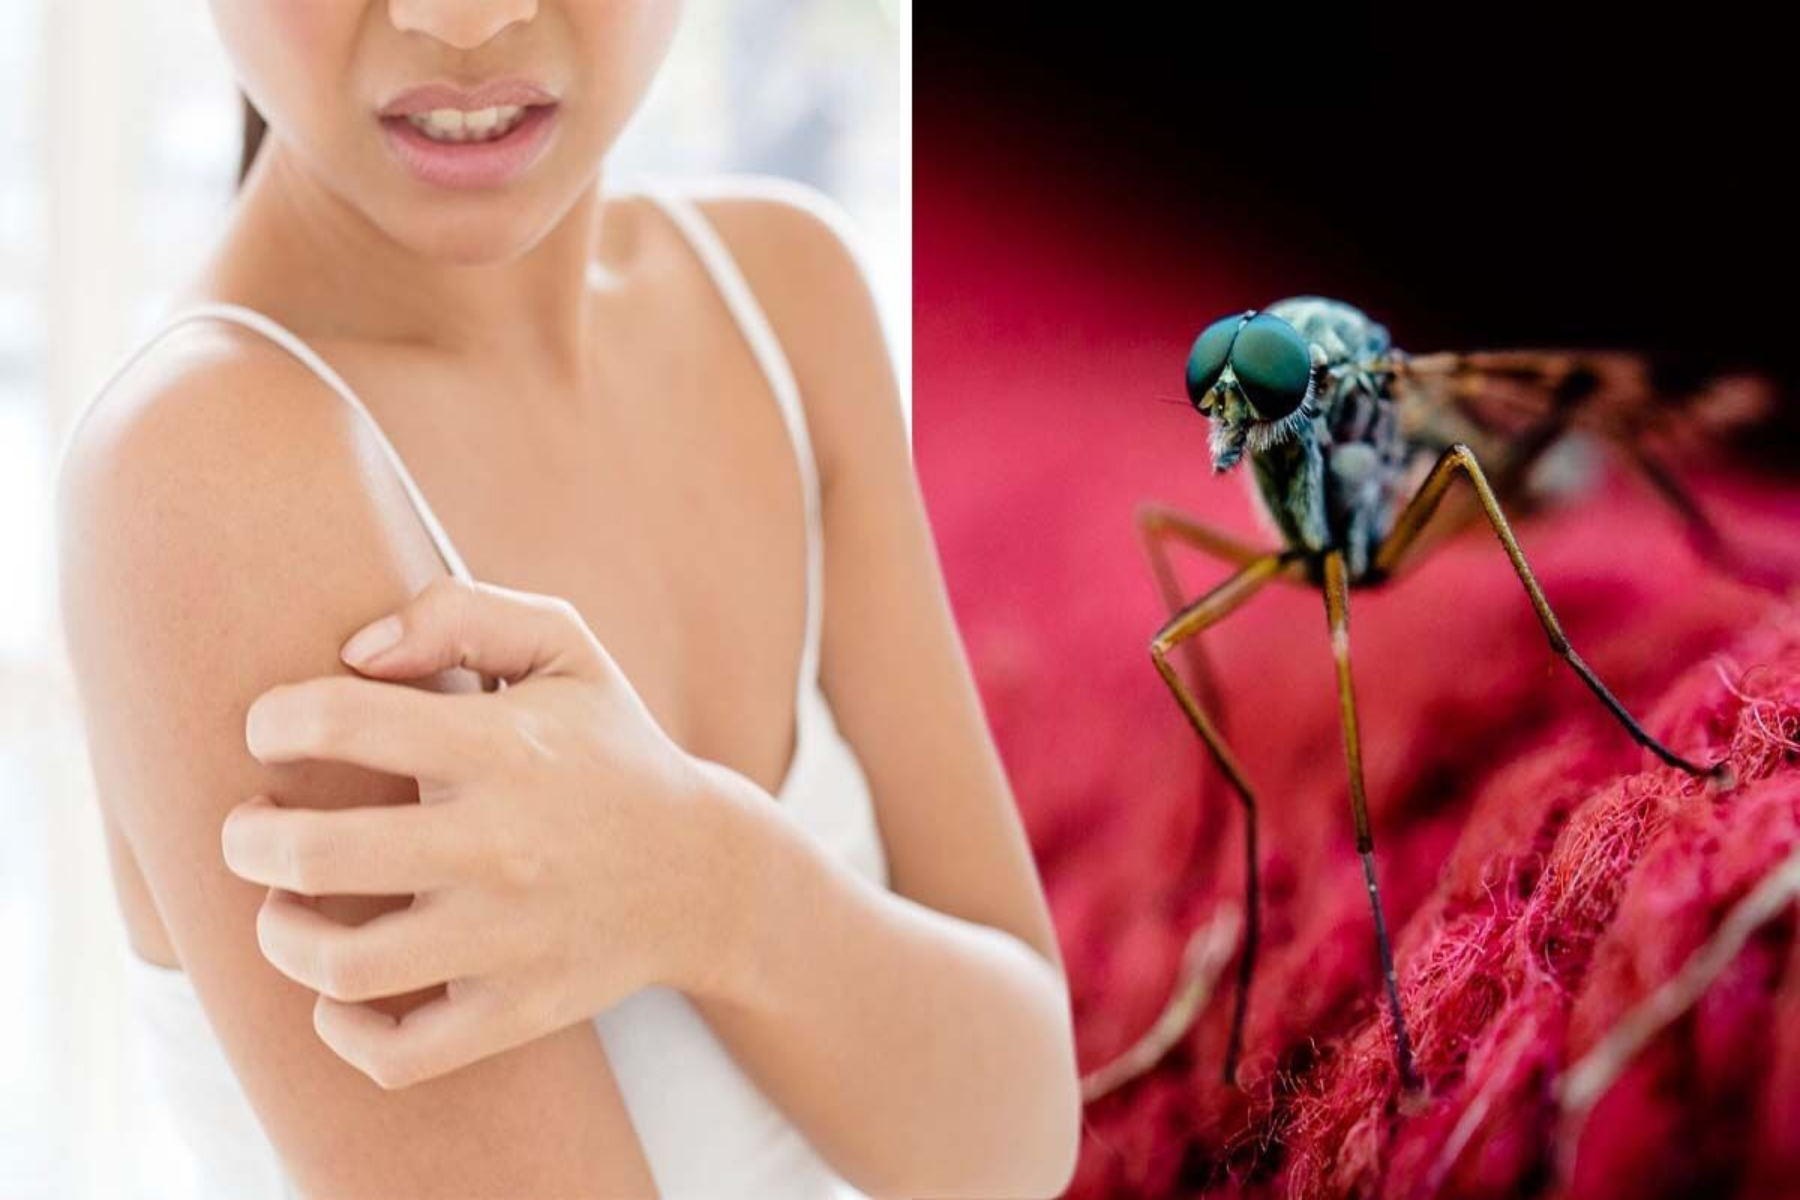 Κουνούπια ανθρωποι: Χρώμα, άρωμα, ιδρώτας ή αίμα; Τι προκαλεί τα κουνούπια να τσιμπούν τους ανθρώπους